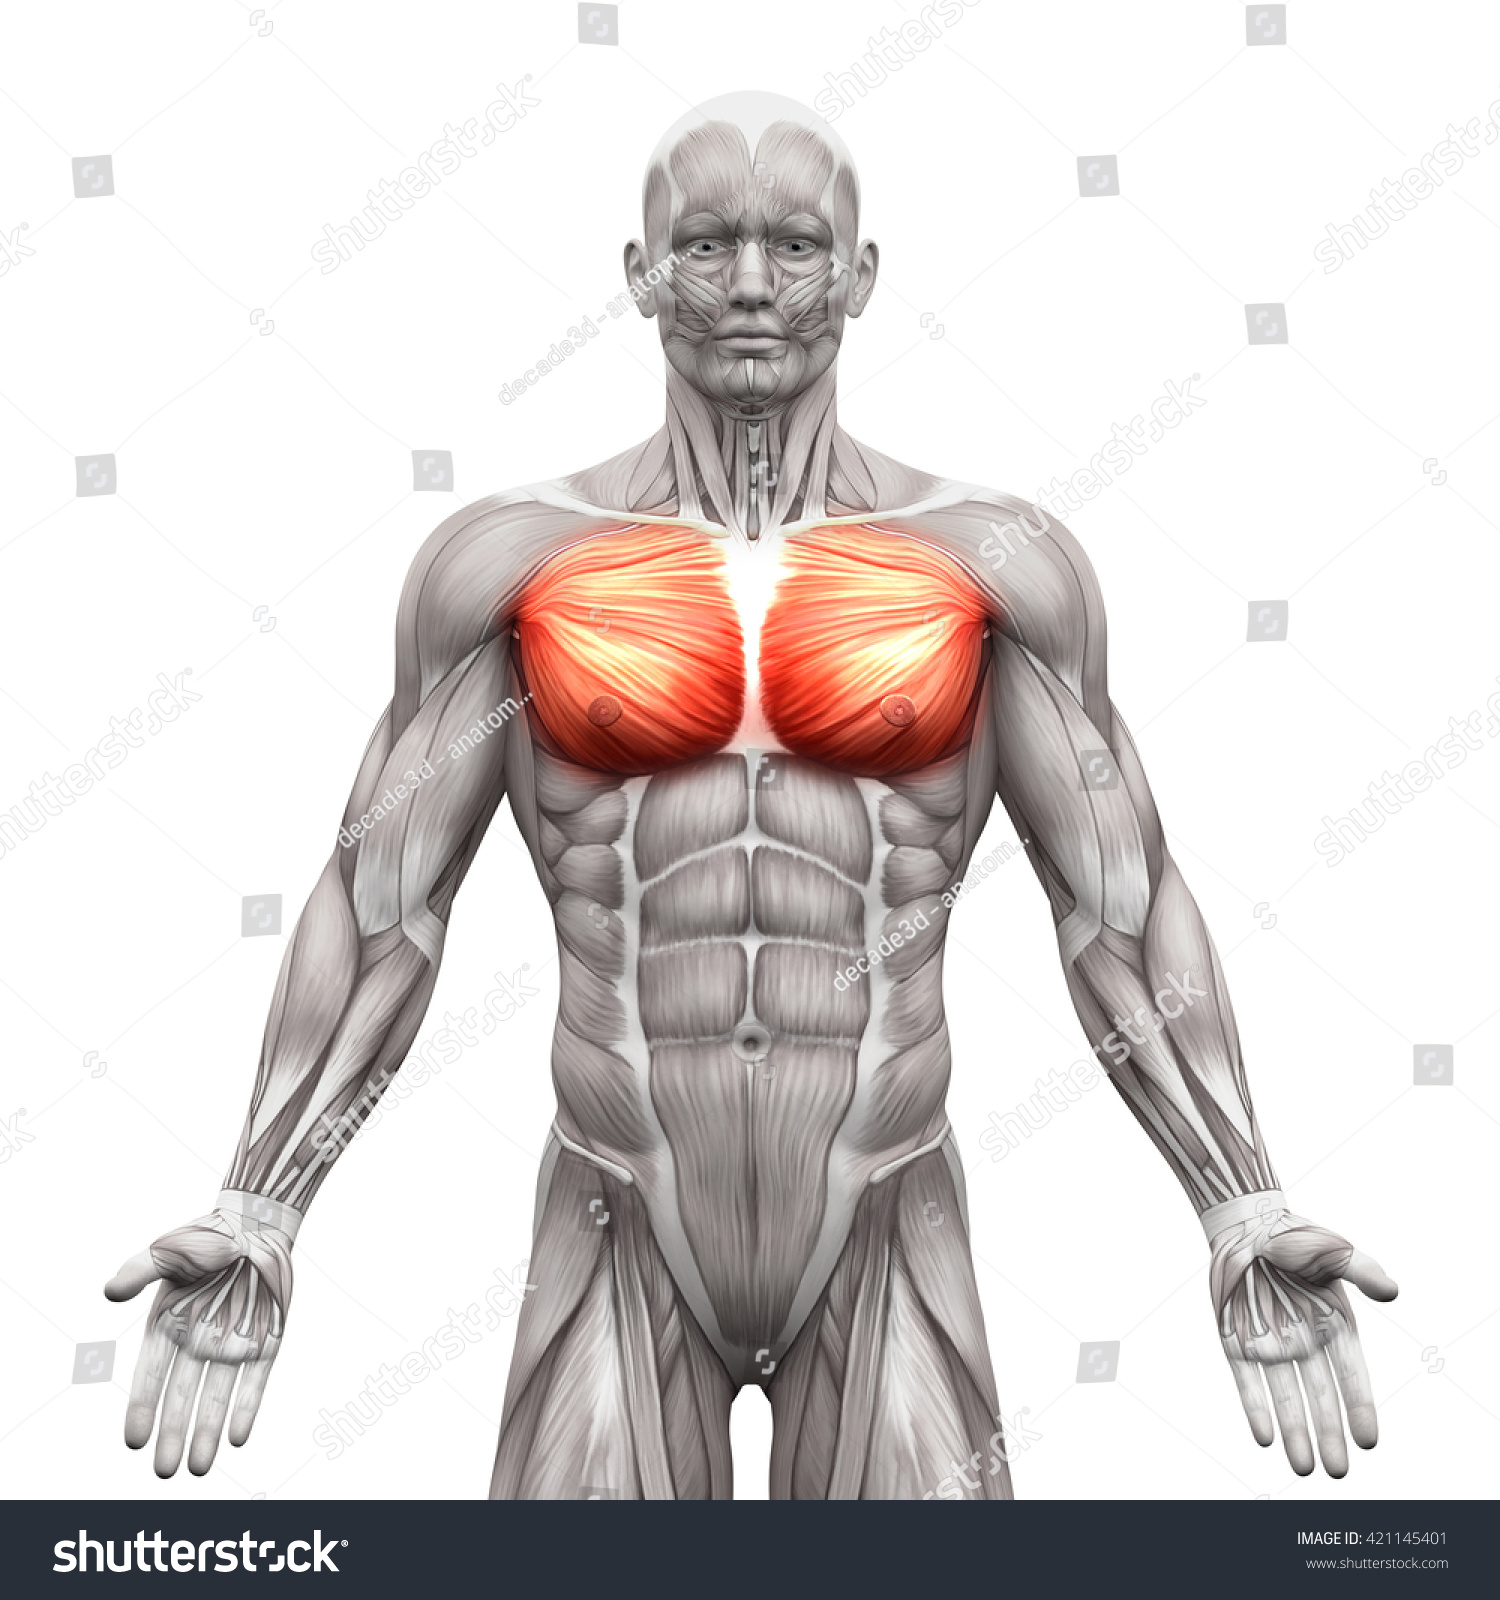 大胸筋と小胸筋 白い背景に解剖学的な筋肉 3dイラスト のイラスト素材